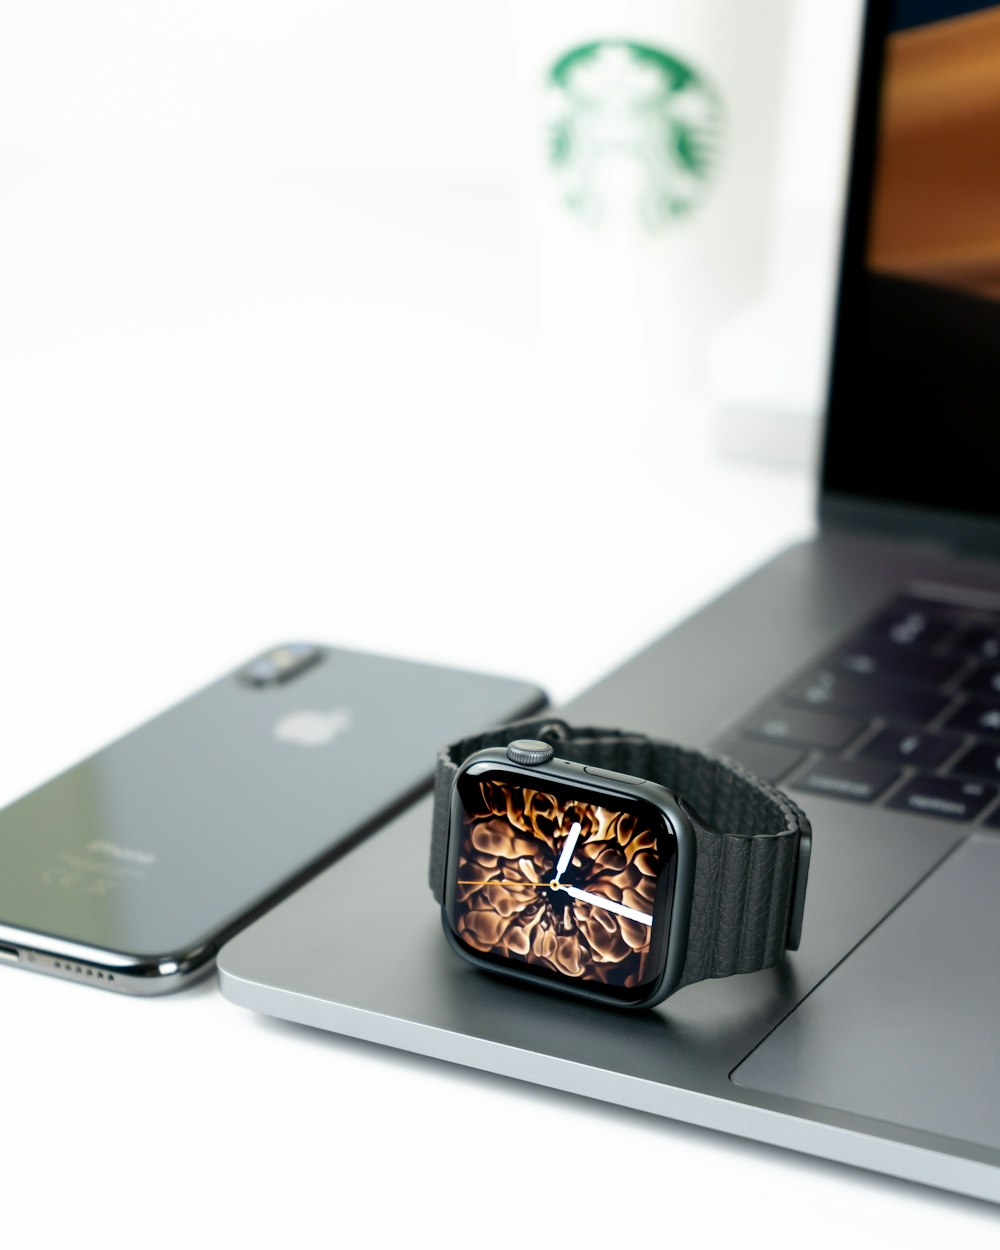 Apple Watch auf dem Laptop neben dem iPhone X